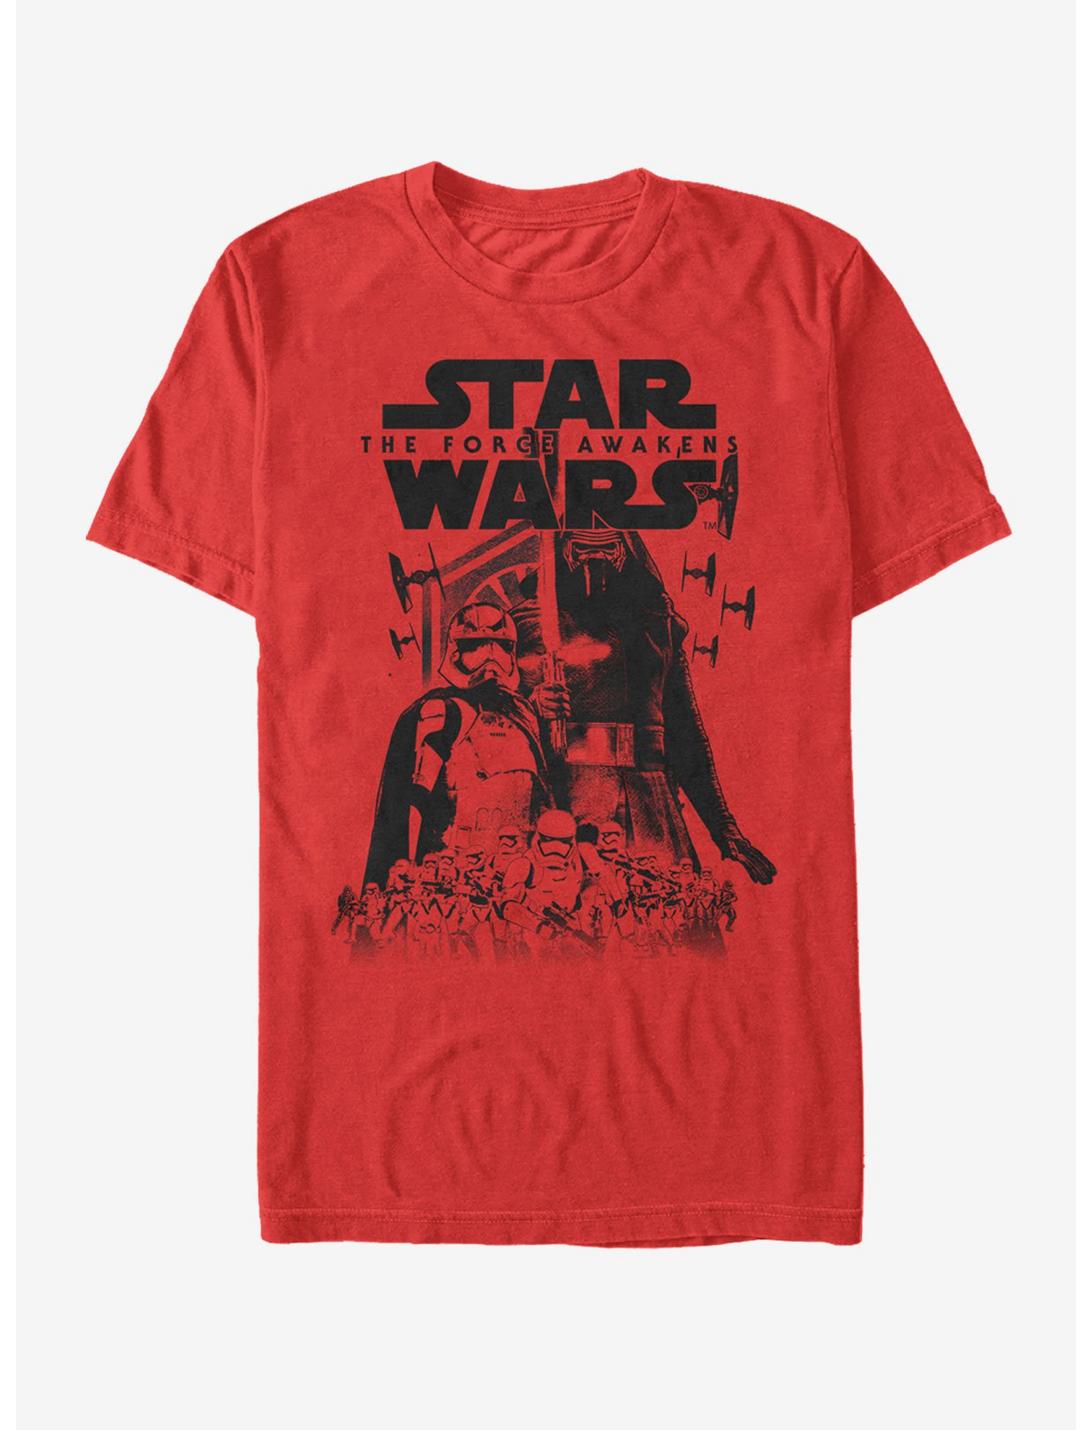 Star Wars The First Order Awakening T-Shirt, RED, hi-res